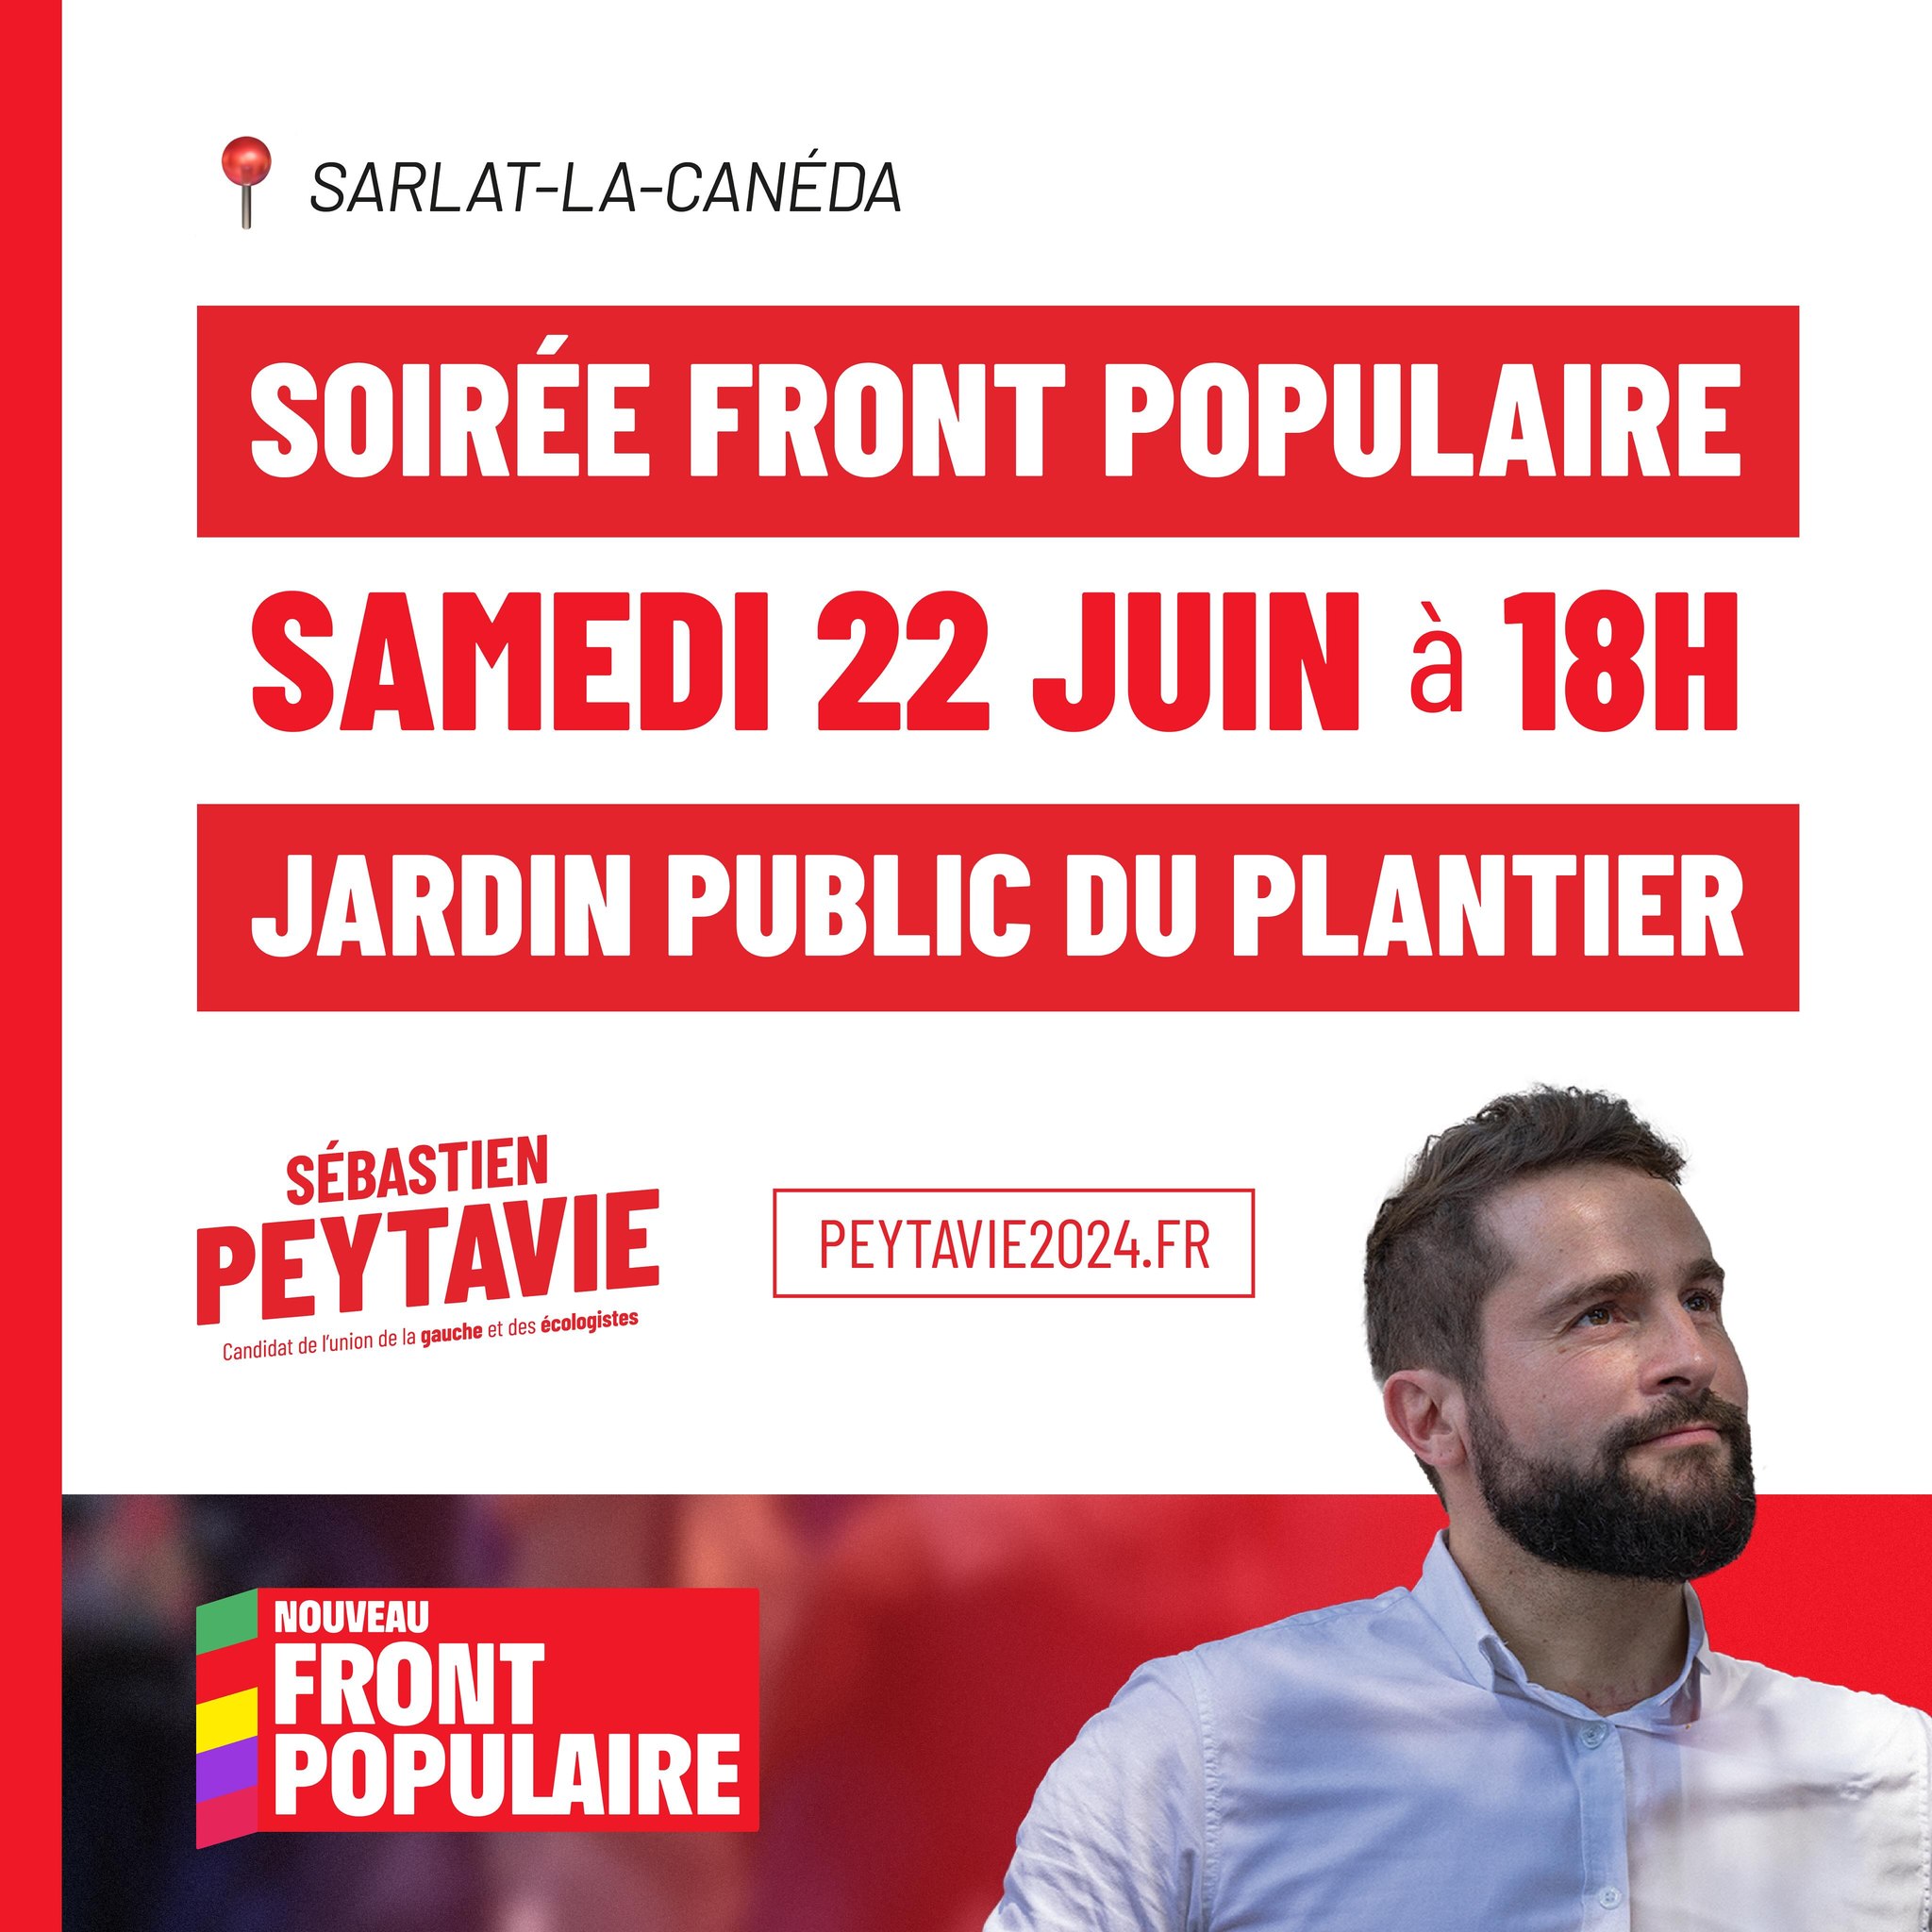 Soirée Front Populaire festive ! Rendez-vous ce samedi 22 juin au jardin public du Plantier à Sarlat à partir de 18h.